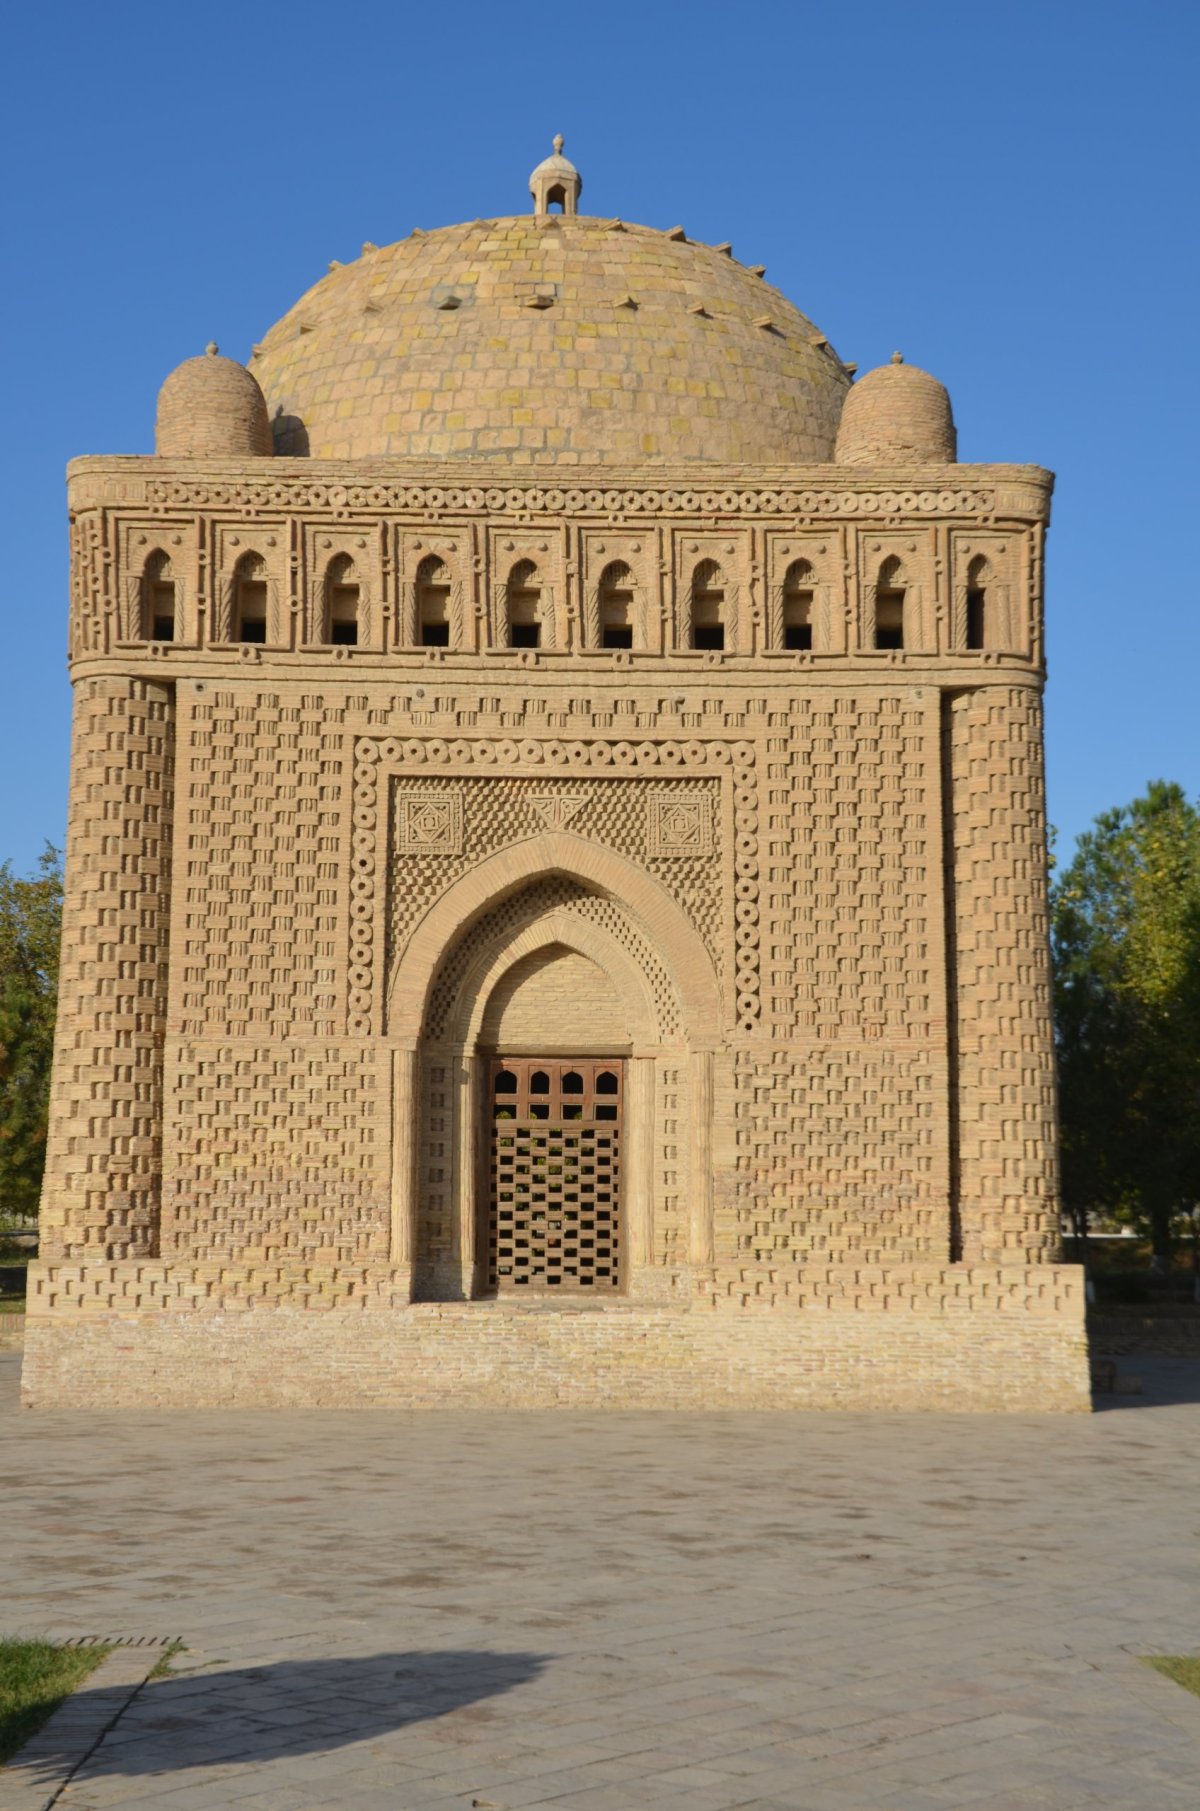 Mauzoleum Samanid